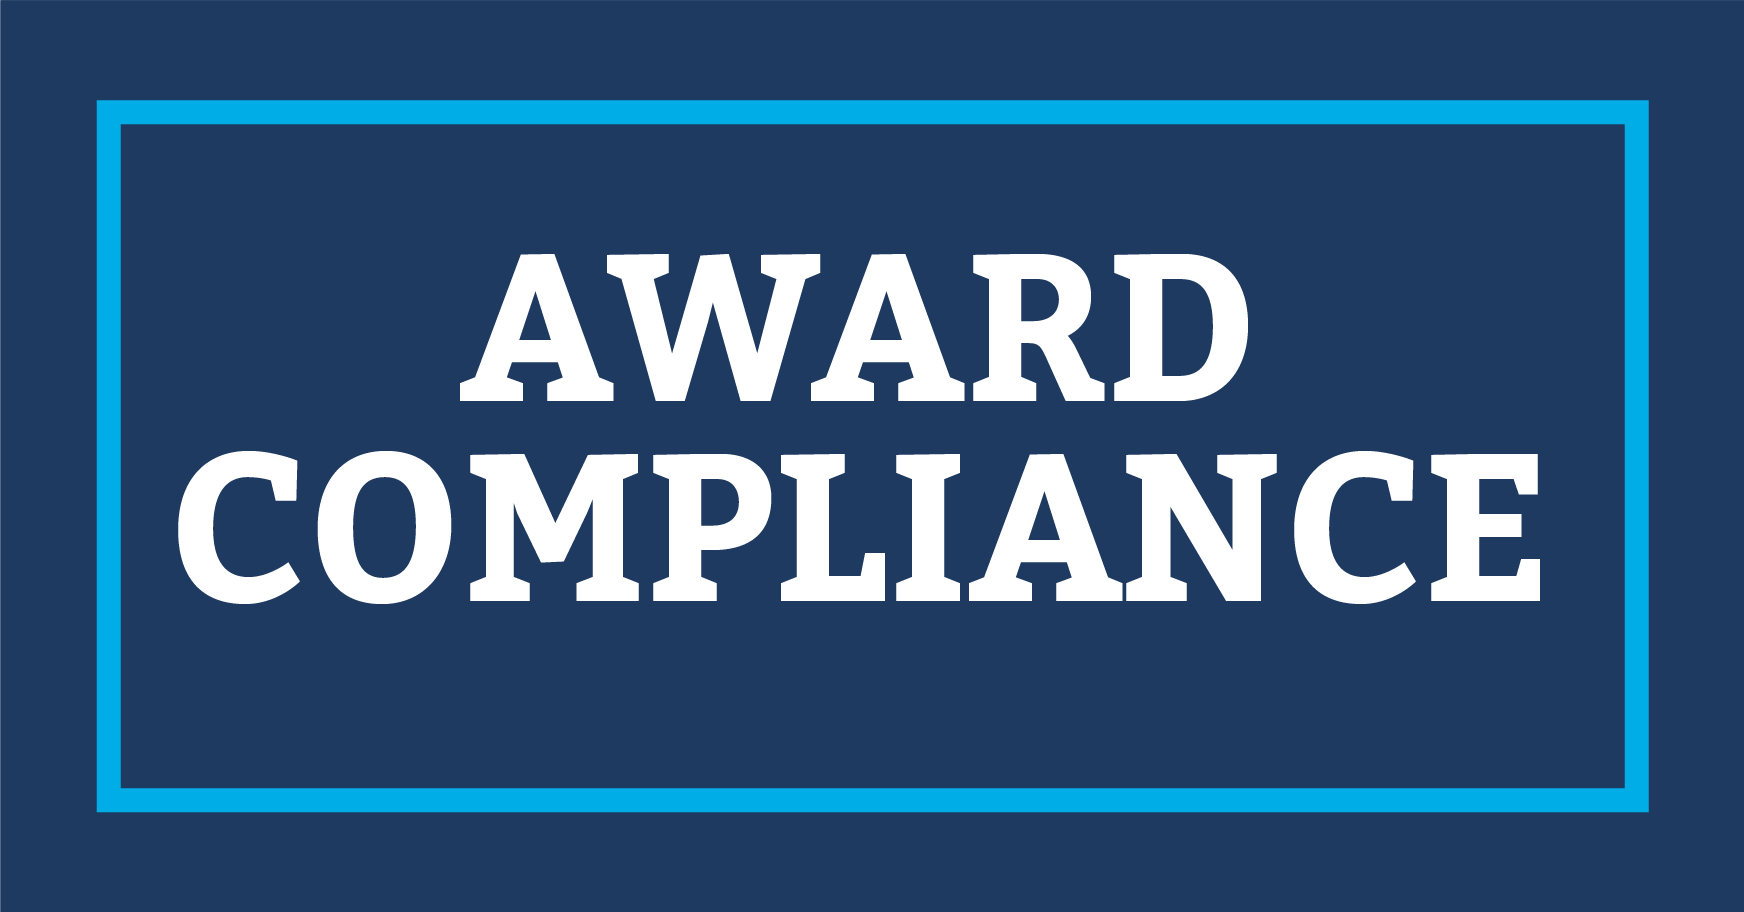 Award Compliance